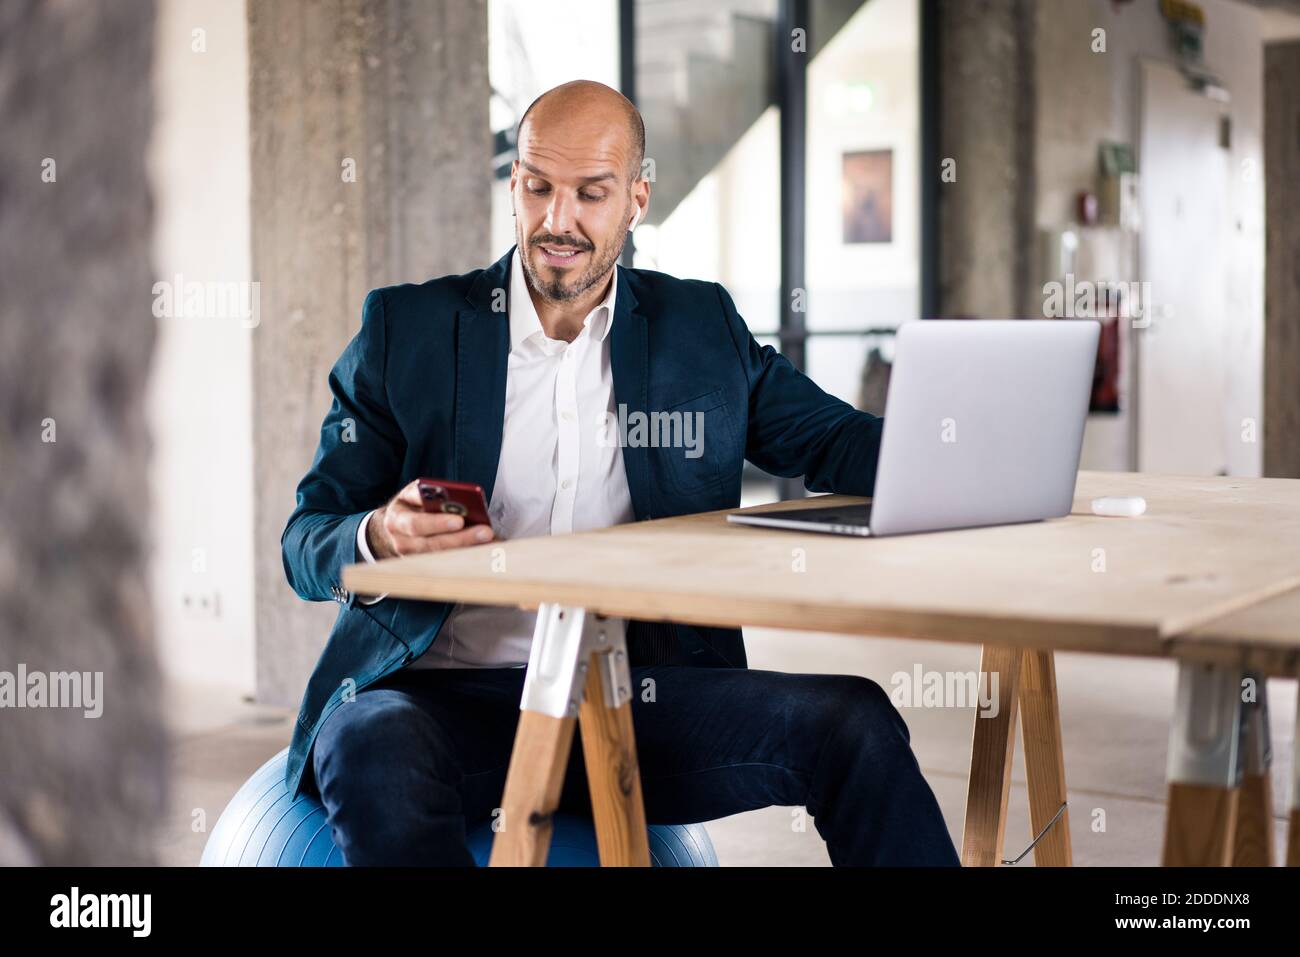 Homme portant une combinaison avec un ordinateur portable et un téléphone portable assis au bureau Banque D'Images